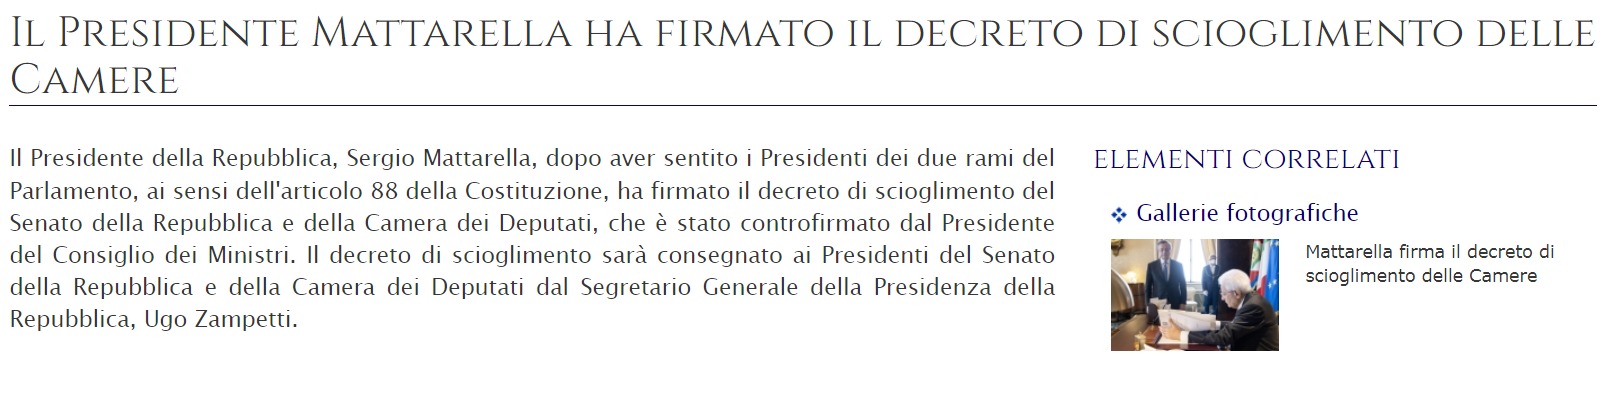 Скриншот с сайте президента Италии